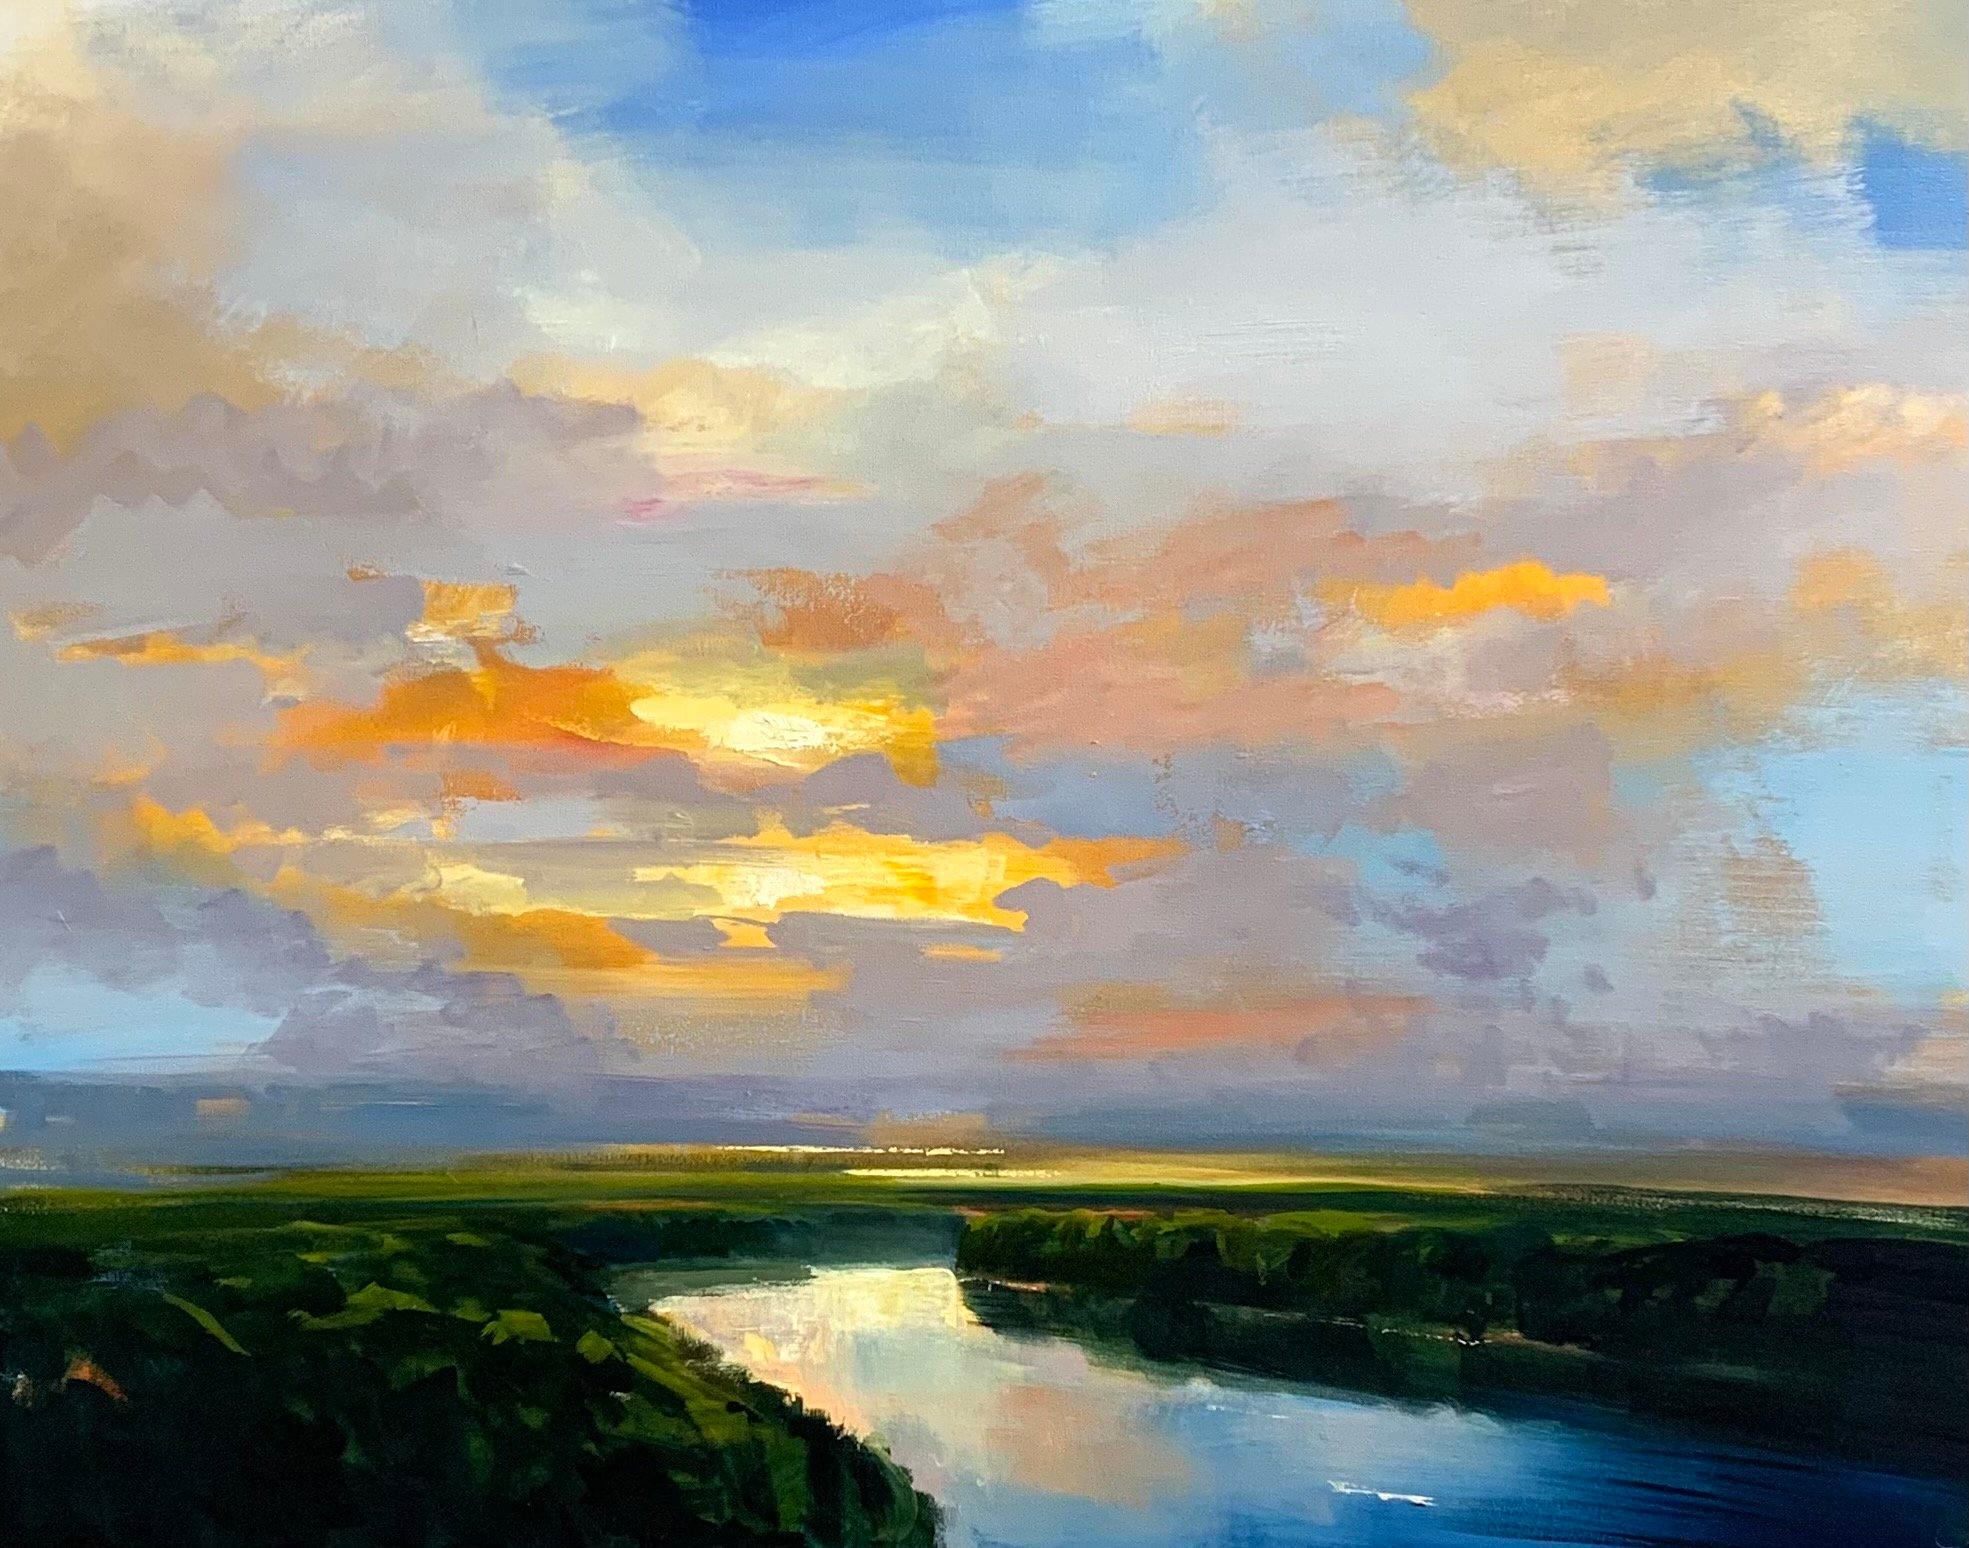 Craig Mooney, "River Bend", Peinture à l'huile sur toile - Paysage de marais, 36 x 48